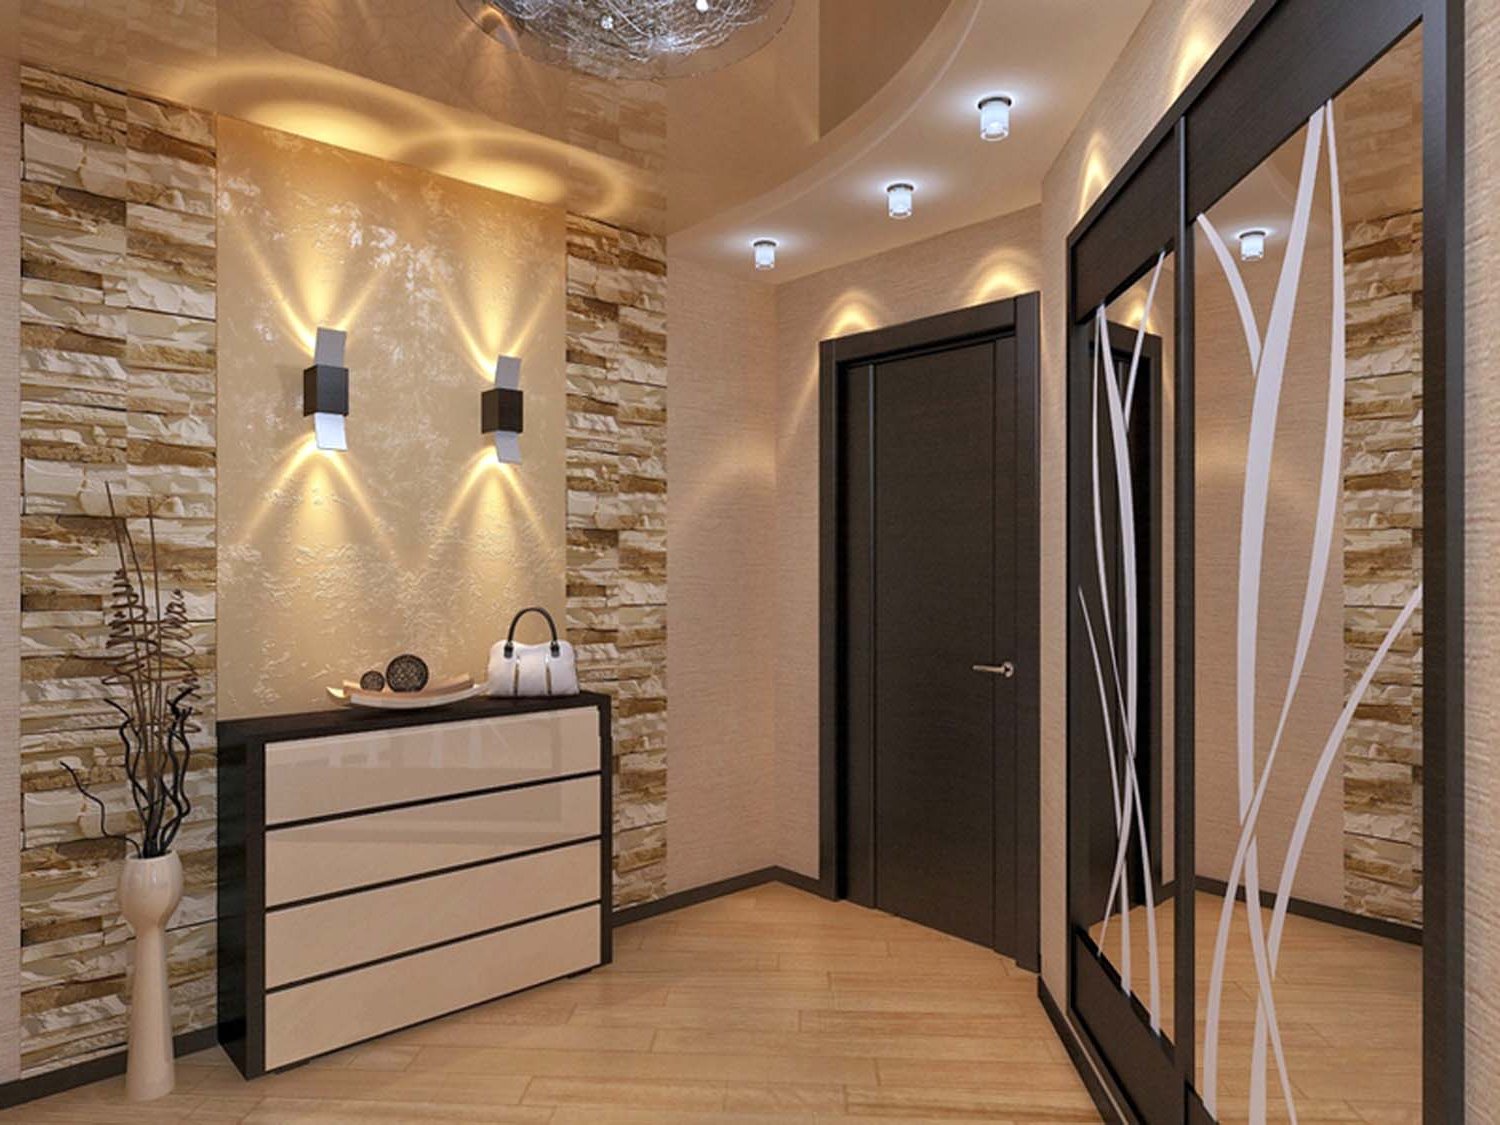 Дизайн г образного коридора в квартире фото